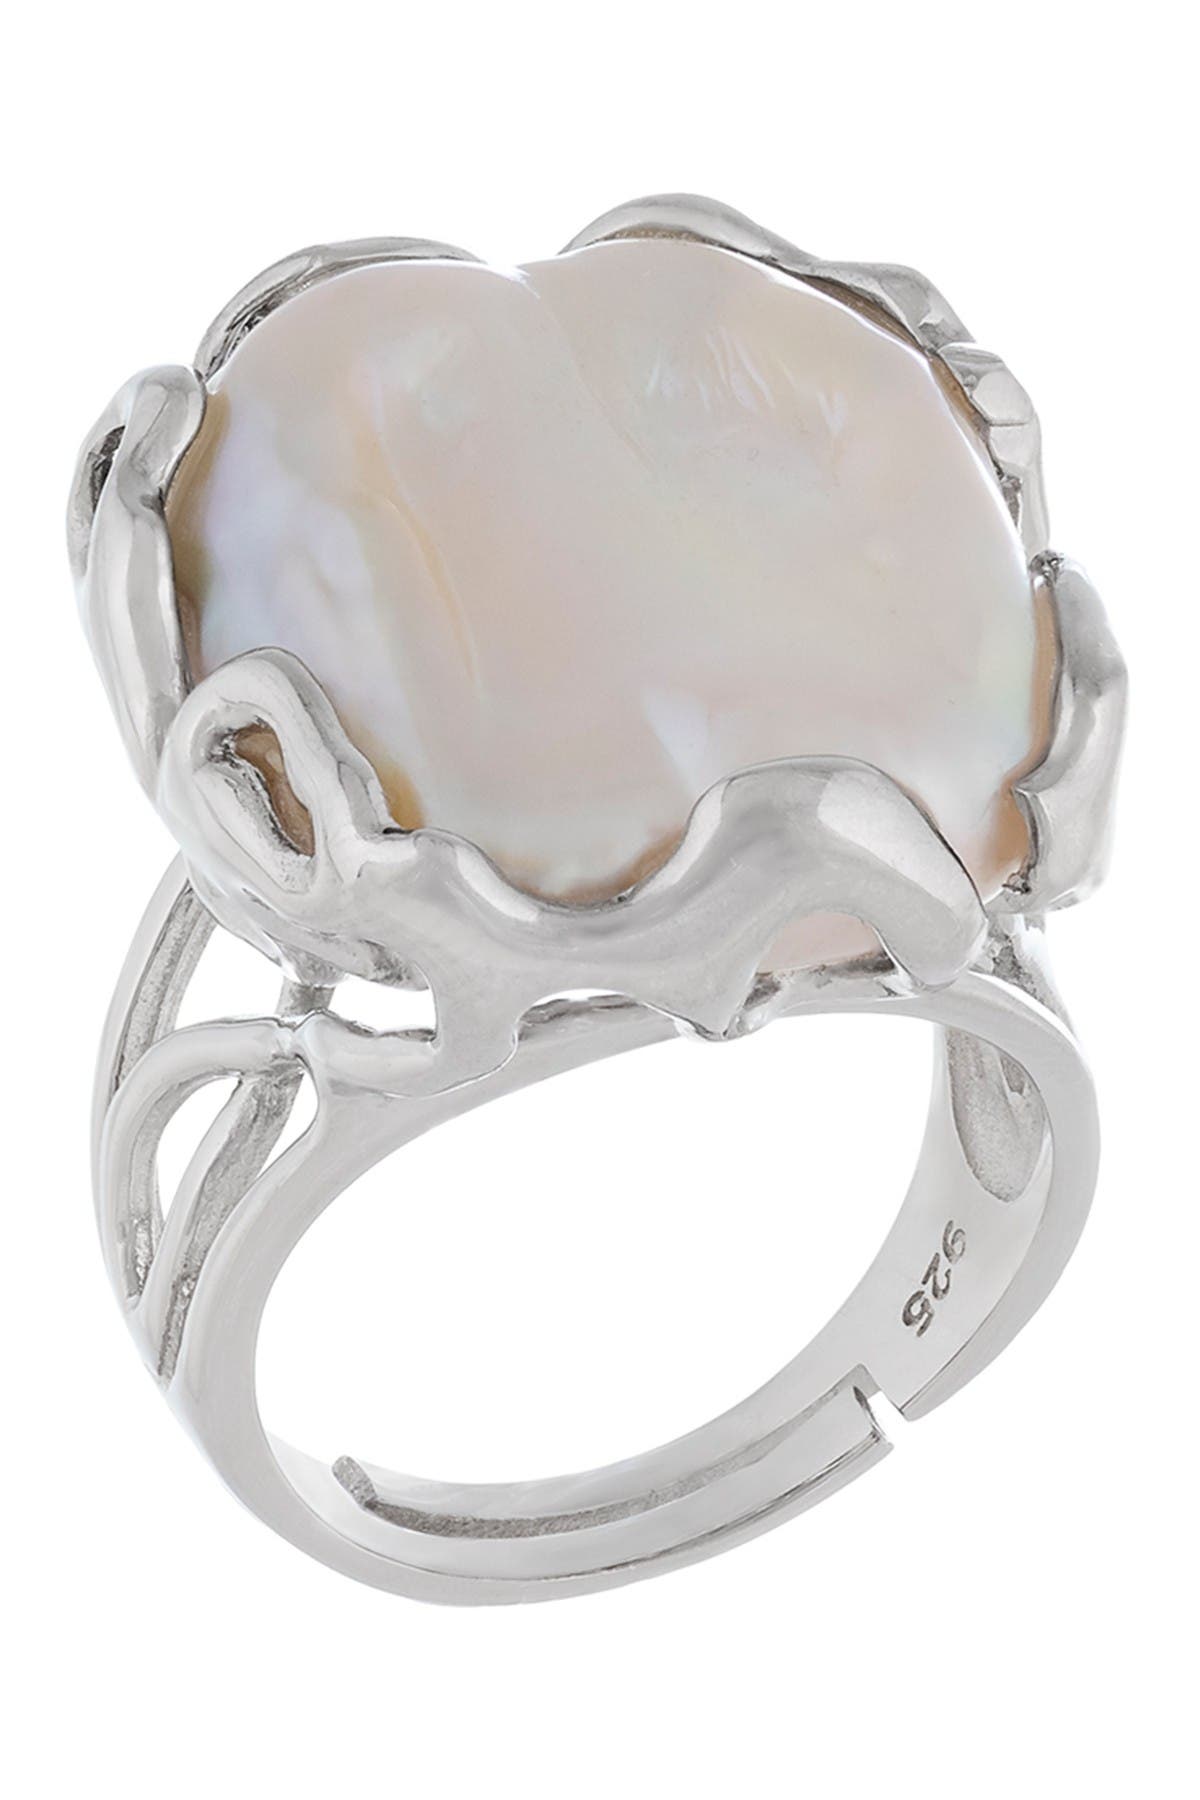 Splendid Pearls Natural White Keshi Pearl Ring